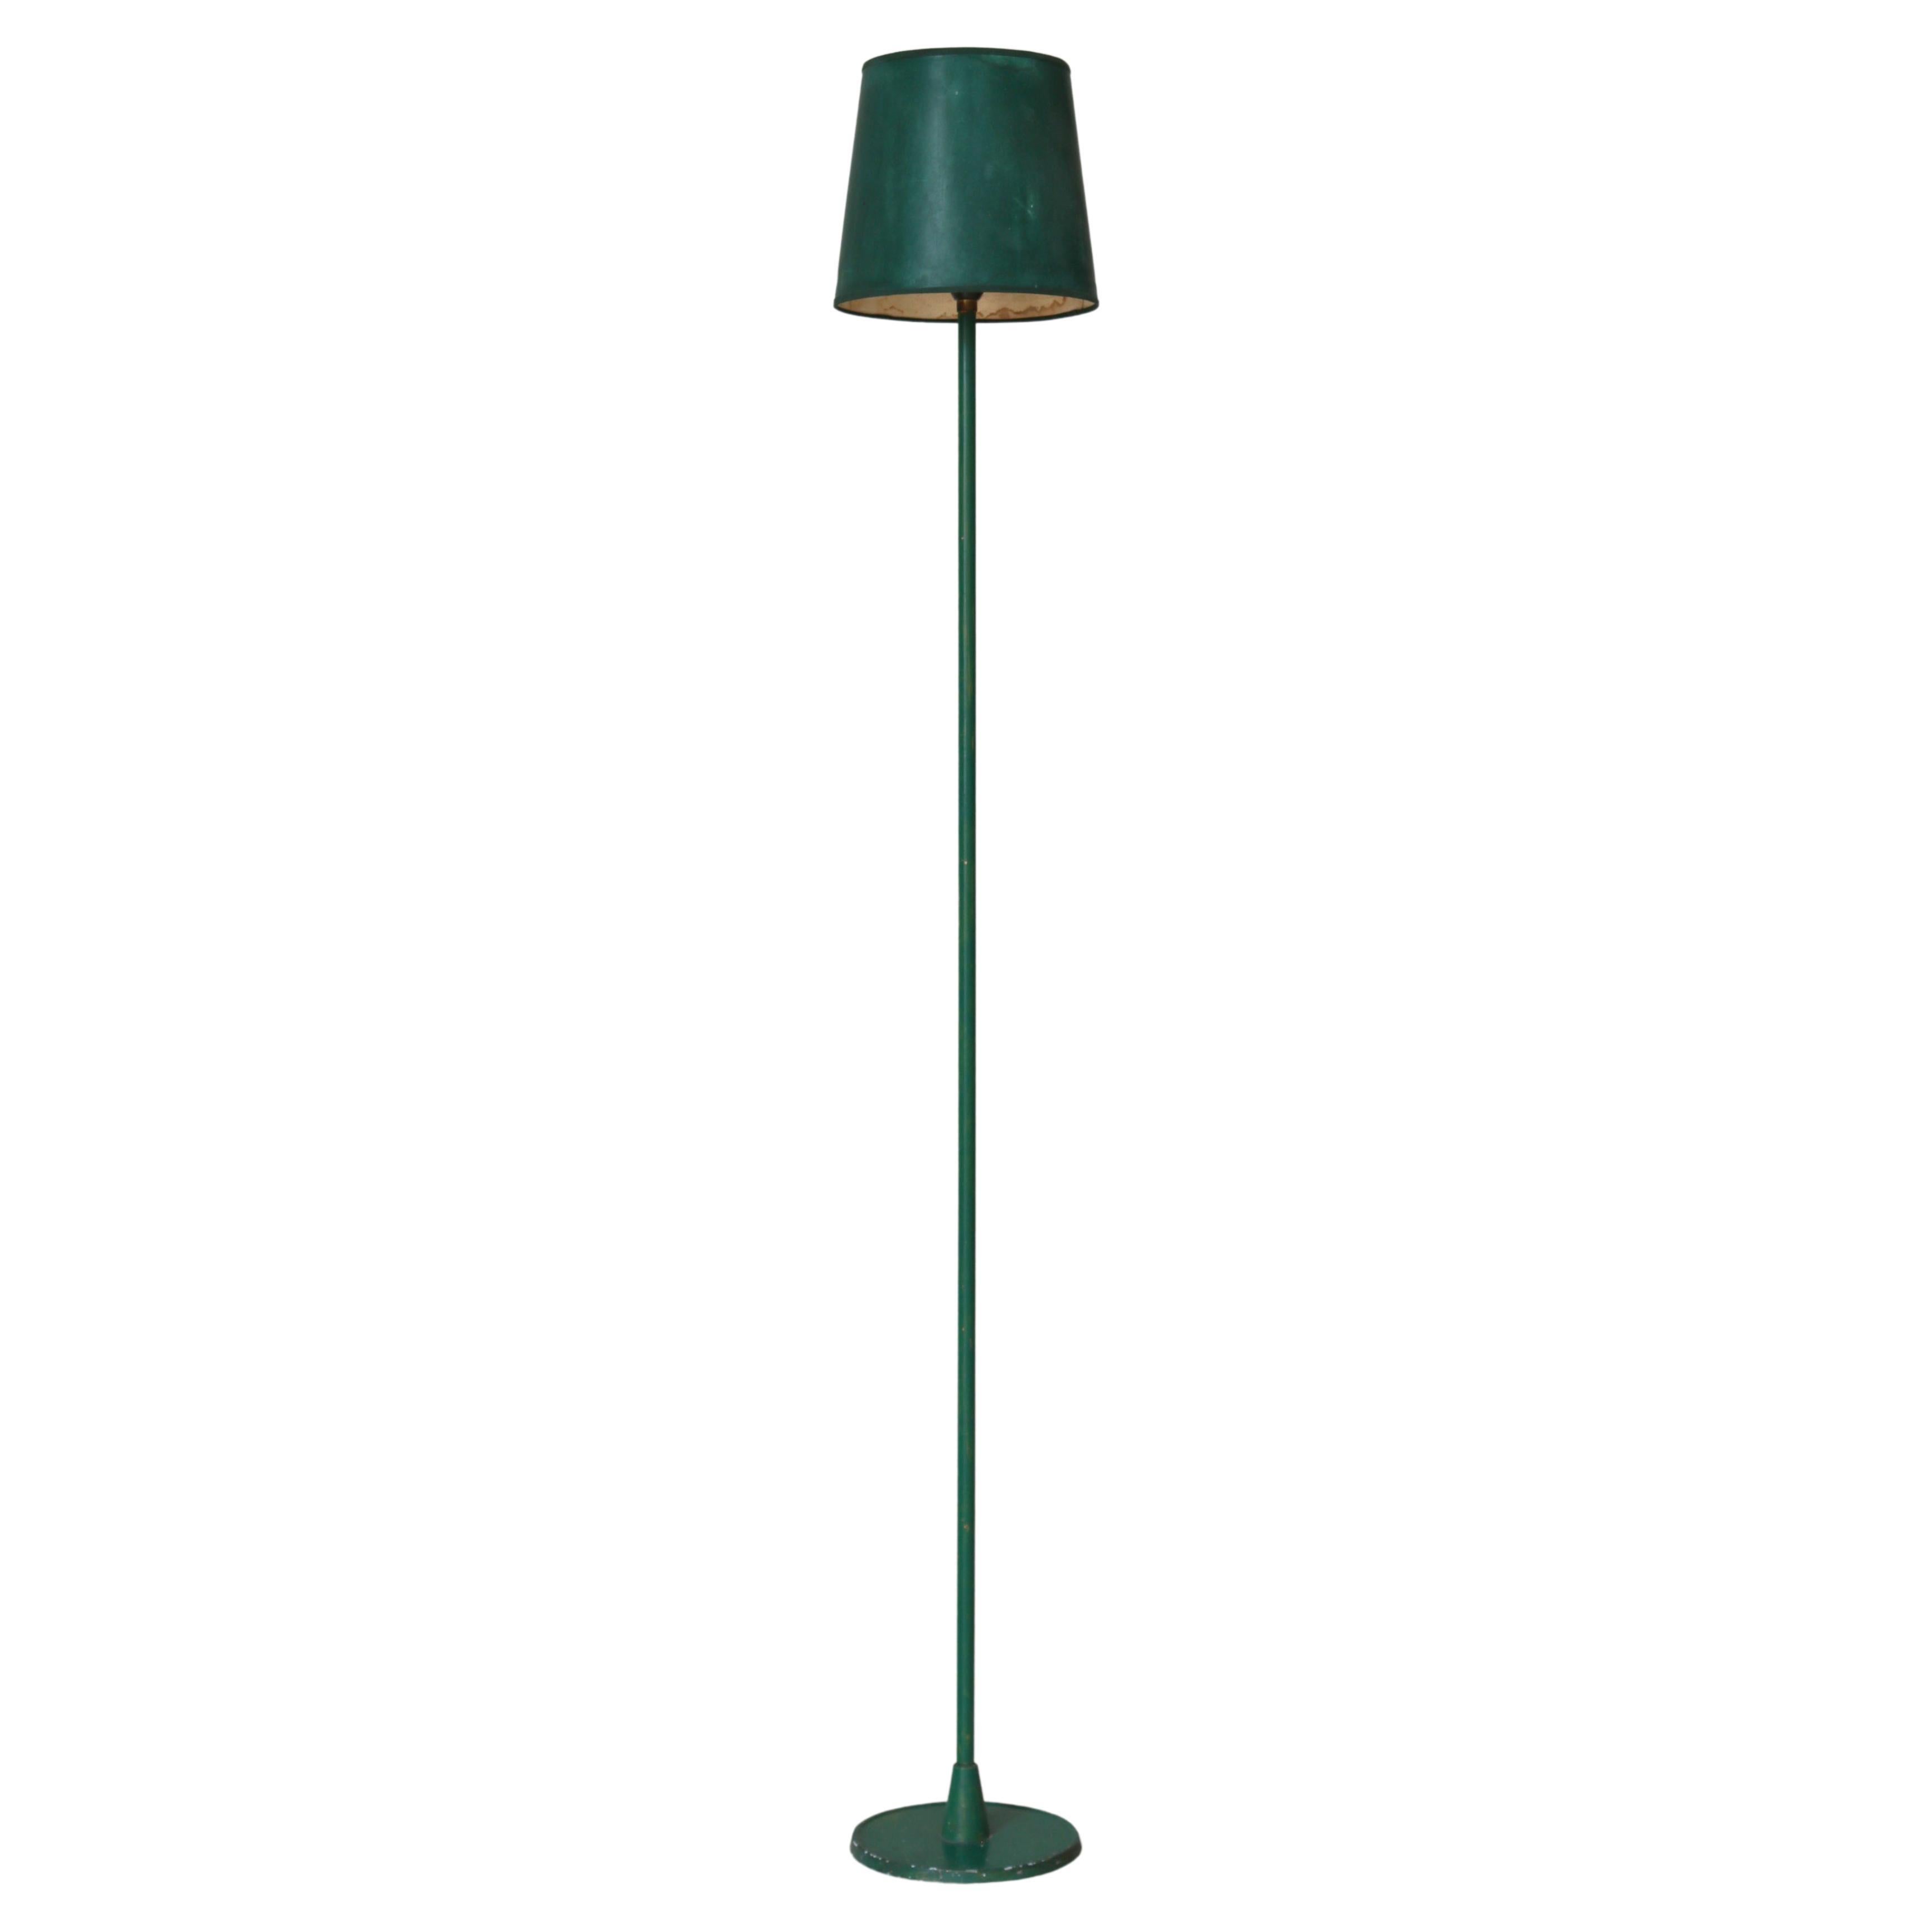 Skandinavische moderne Stehlampe aus grün lackiertem Metall, 1940er Jahre